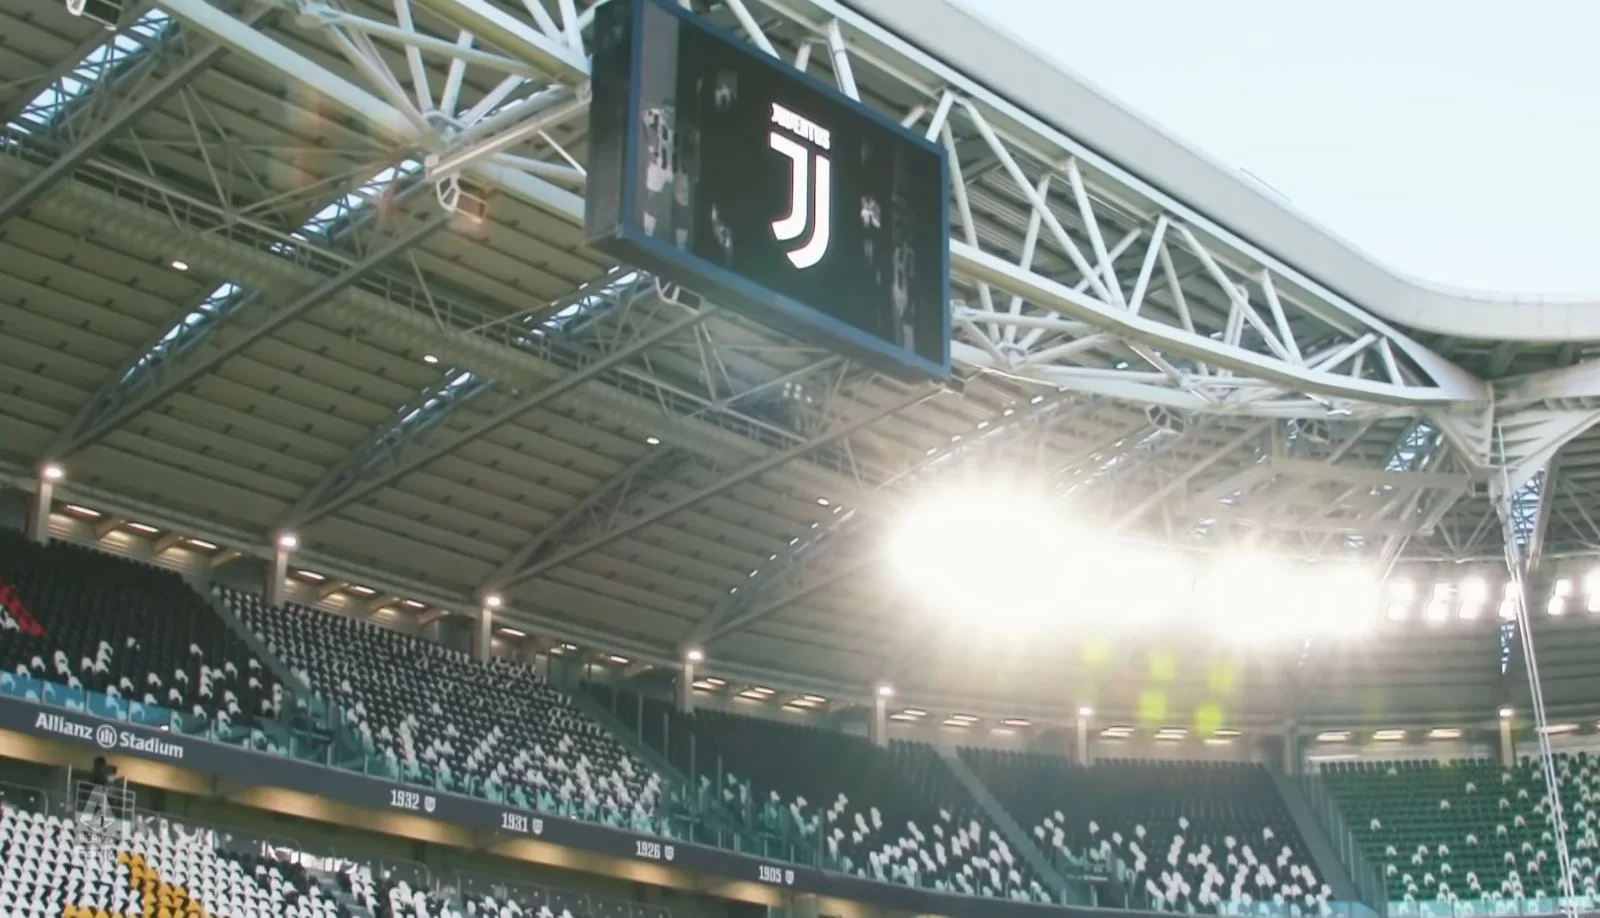 La Juventus non è ancora morta, è solamente ferita: avversari, guai a sottovalutarla